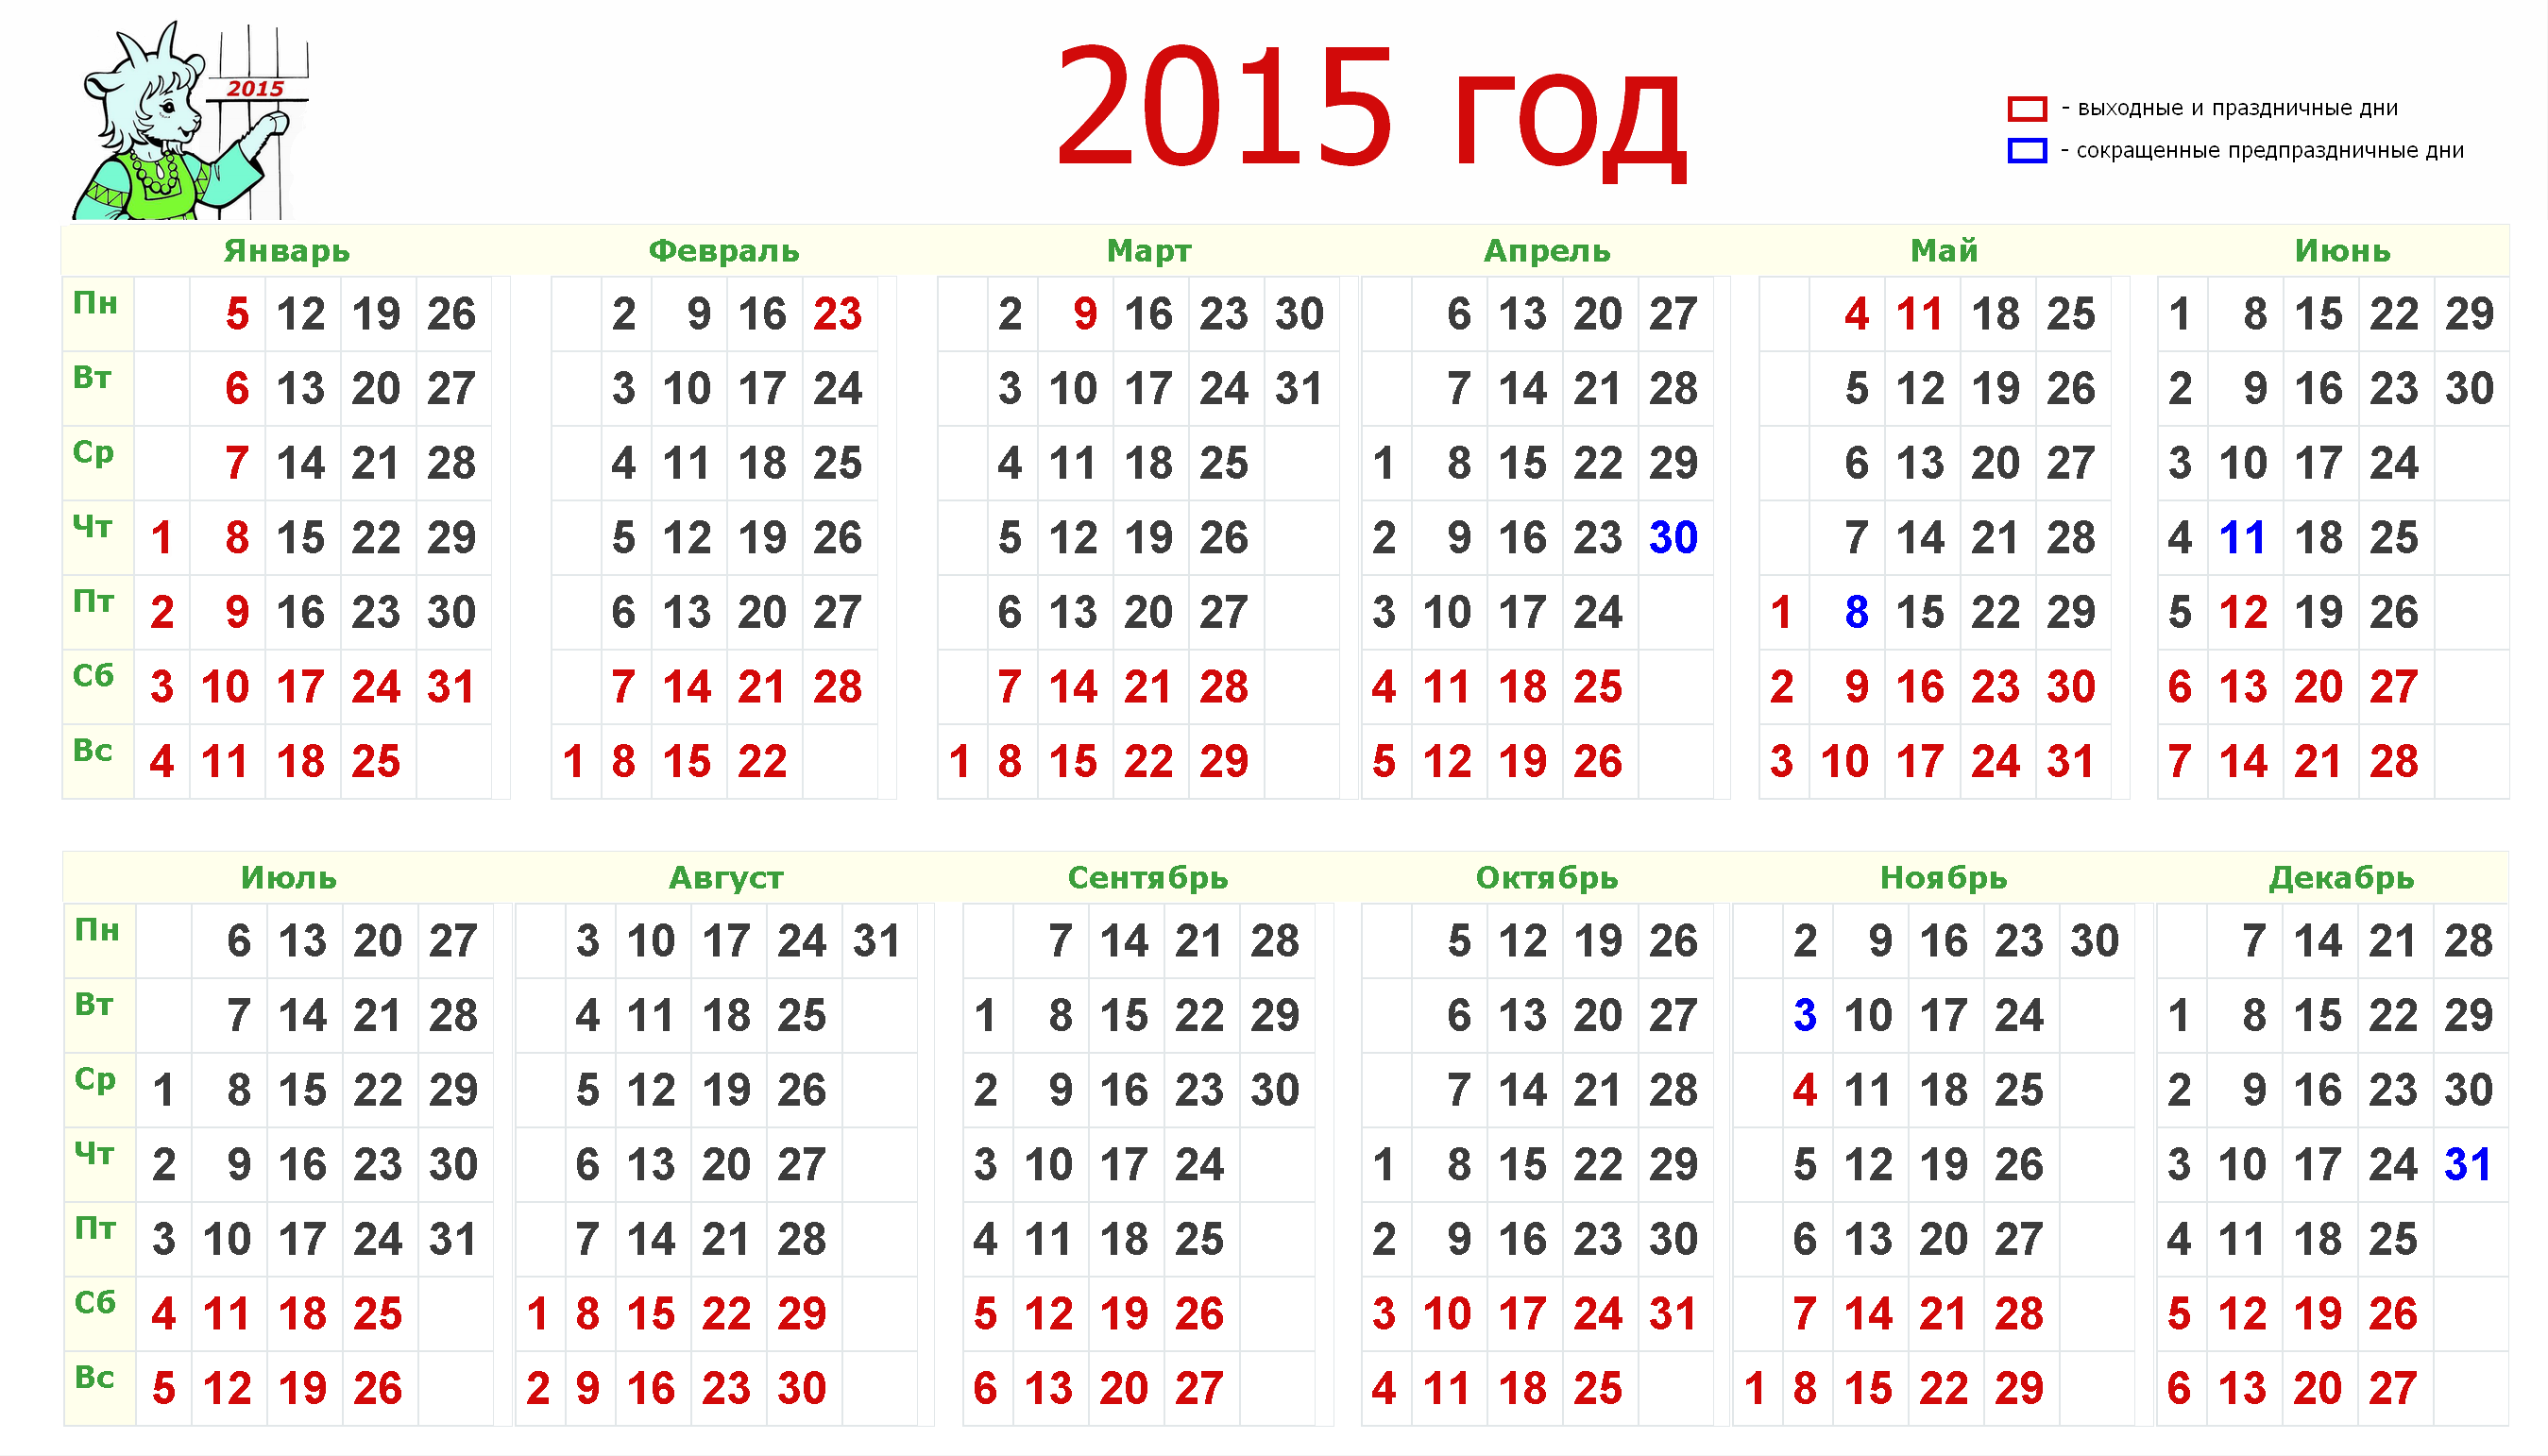 Календарь 2015г. Календарь 2015 года по месяцам. Календарь за 2015 год с выходными и праздниками. Календарь 2015г.по месяцам с праздничными и выходными днями.